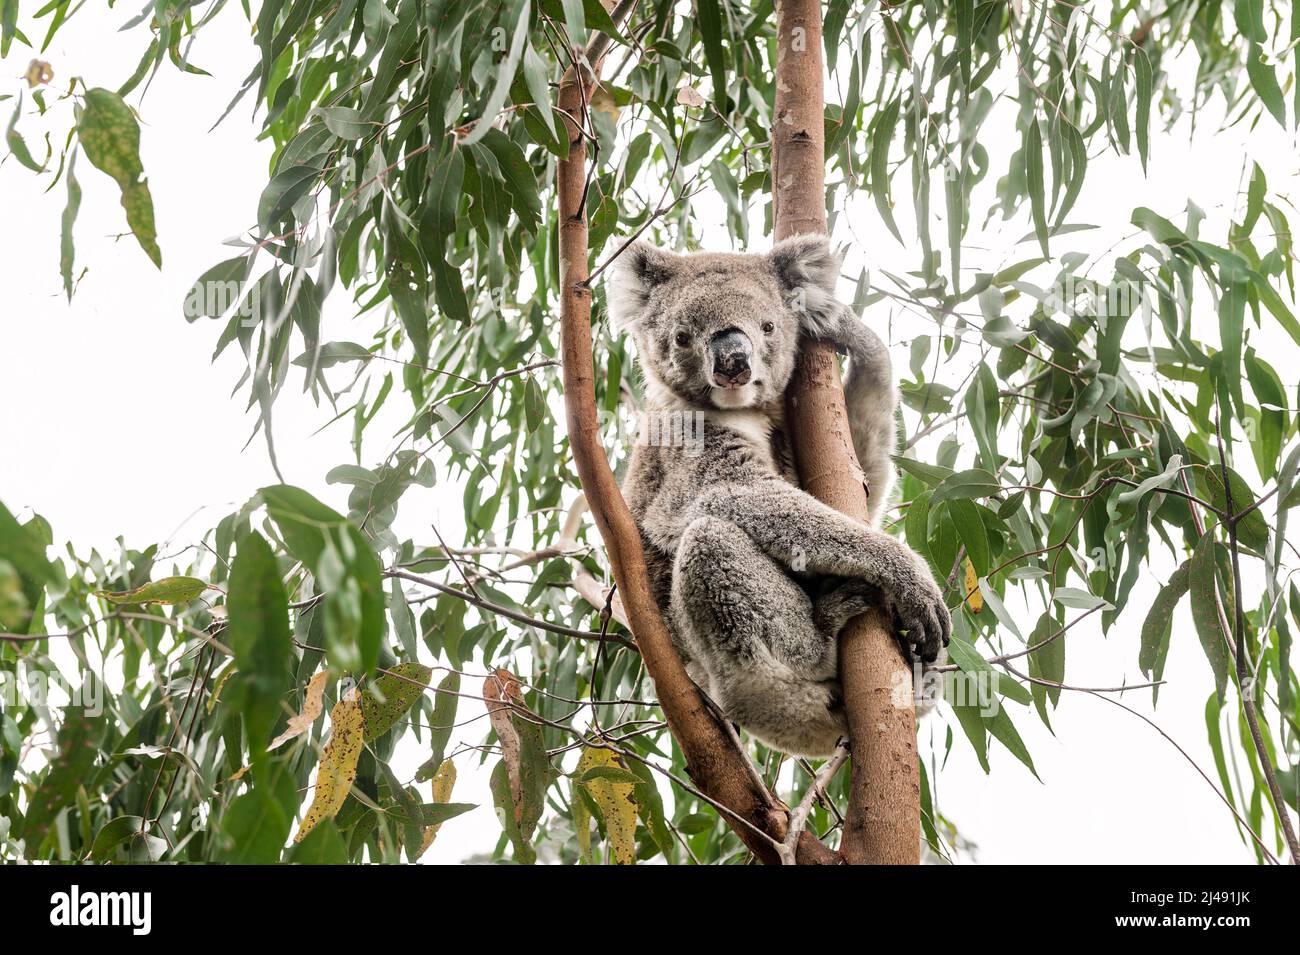 Koala in a eucalyptus tree. Stock Photo